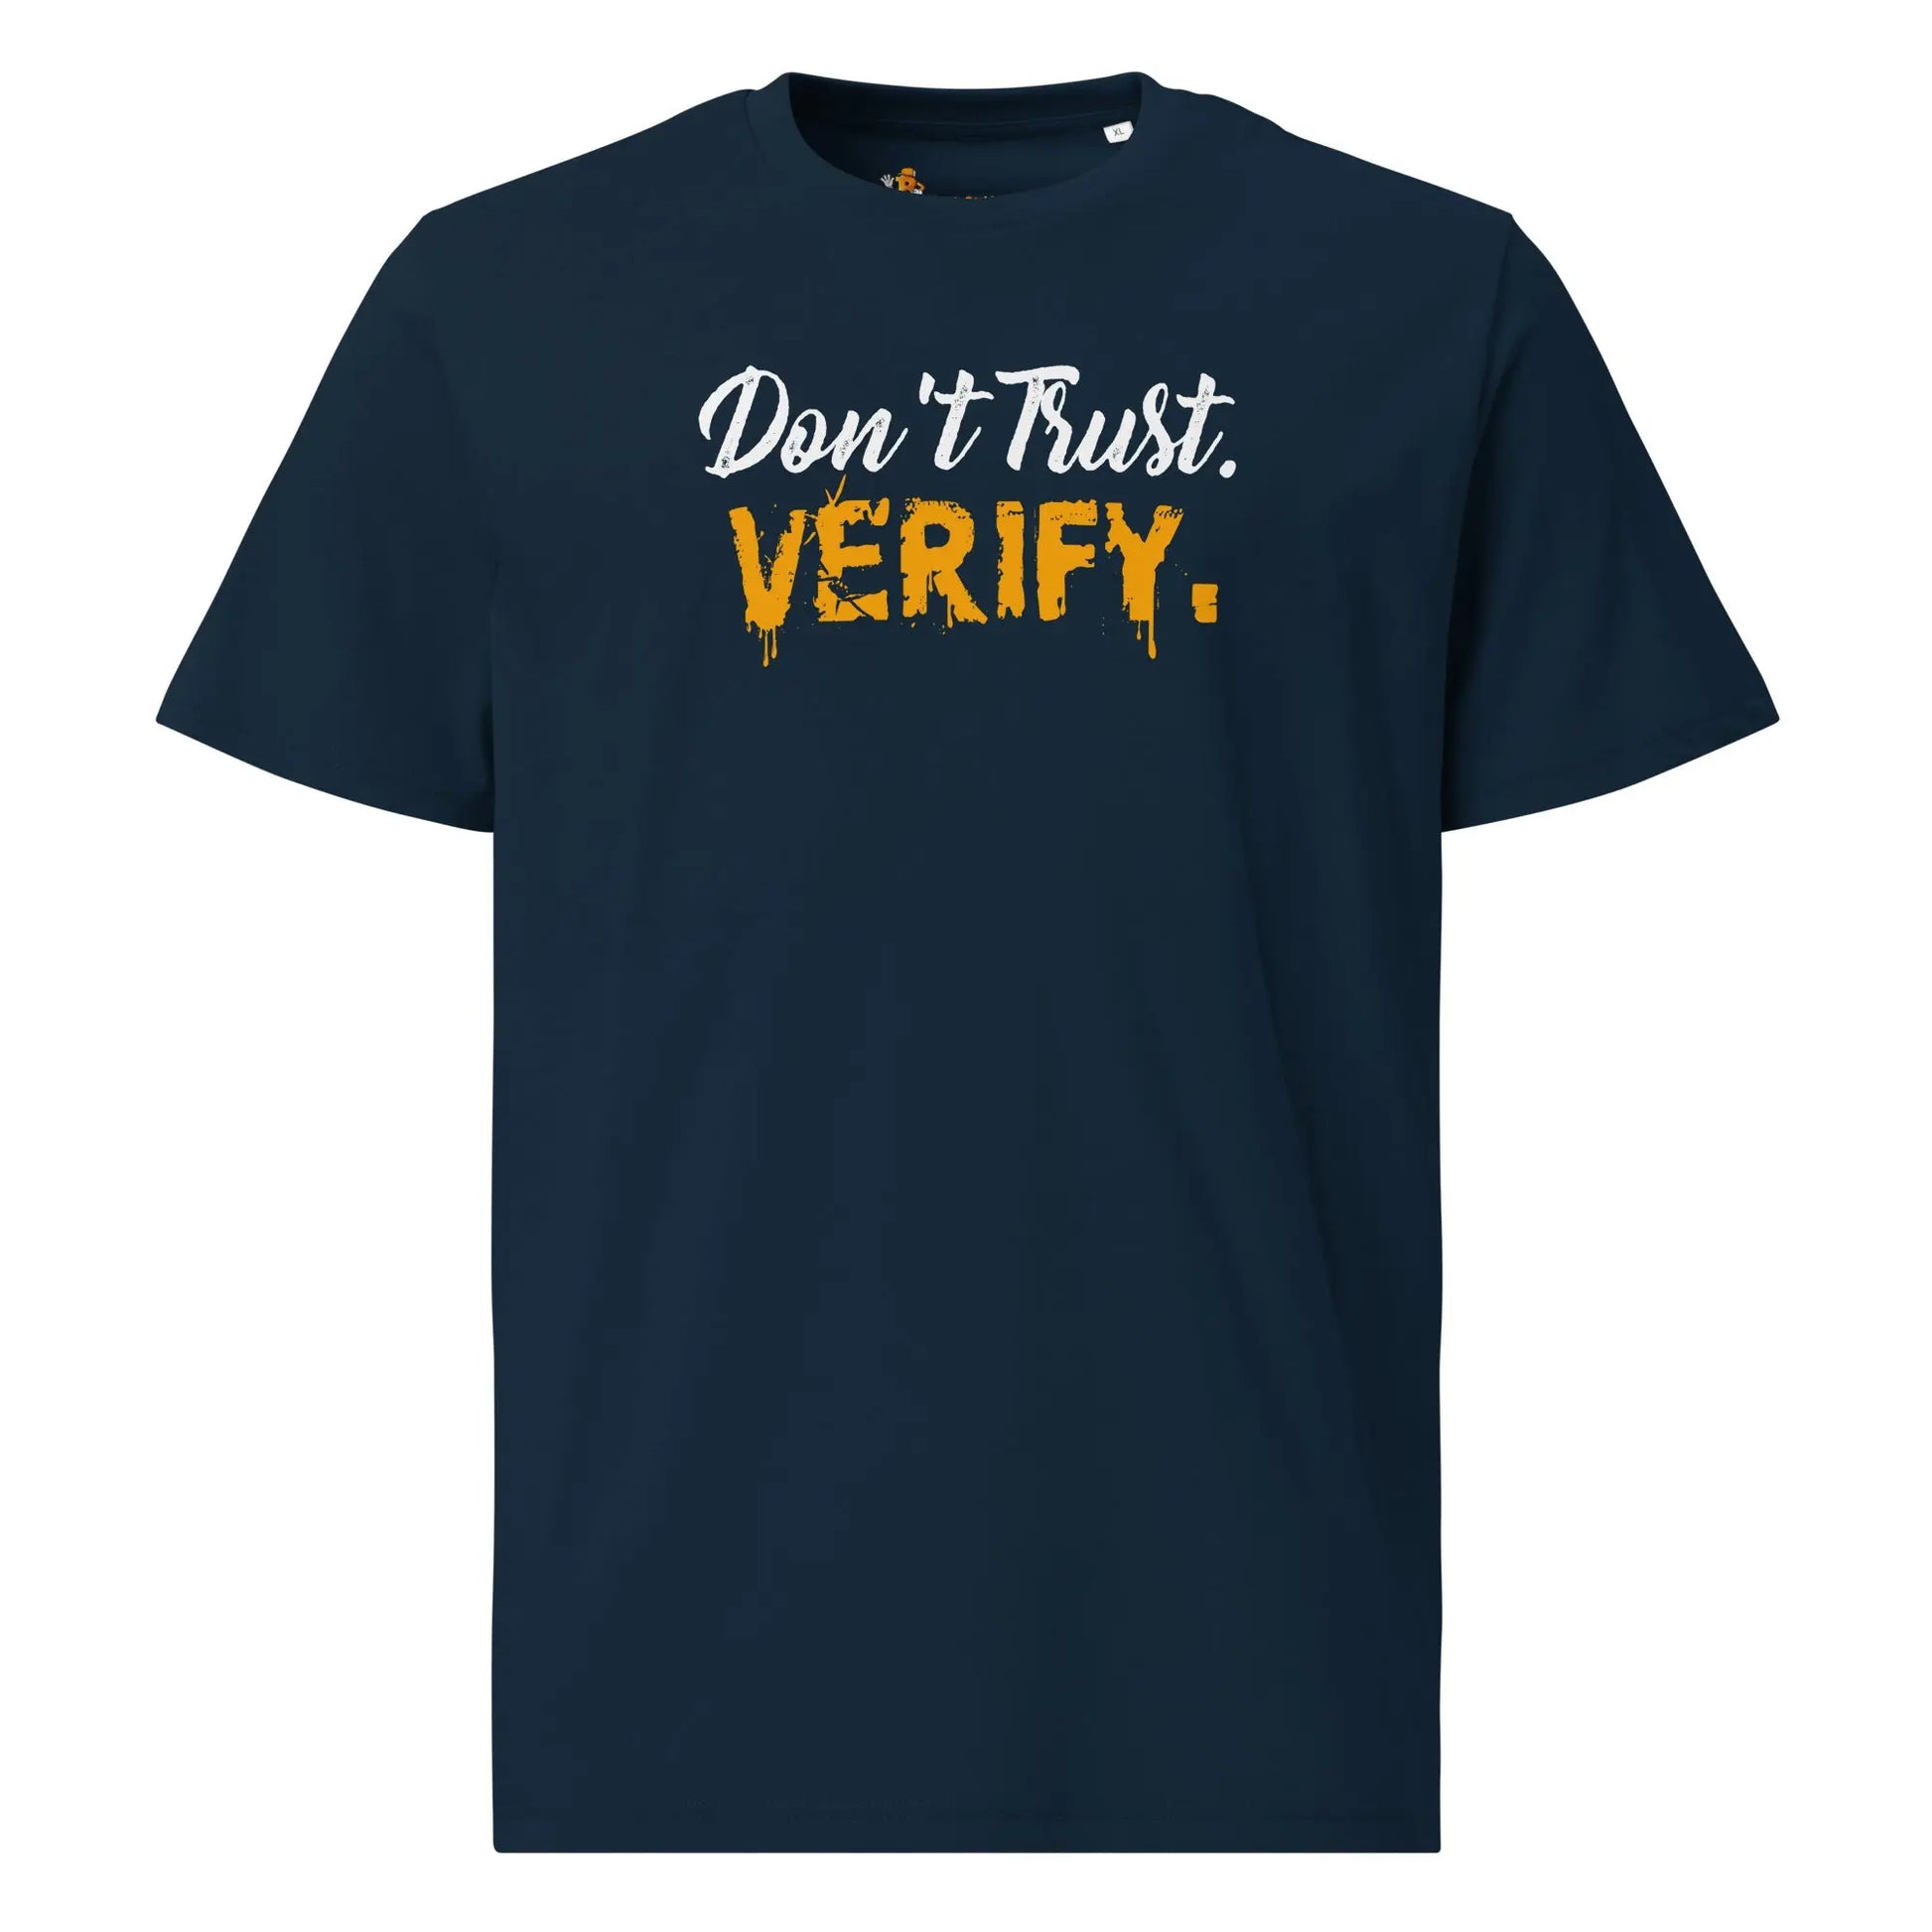 Don`t Trust Verify - Premium Unisex Organic Cotton Bitcoin T-shirt Navy Blue Color